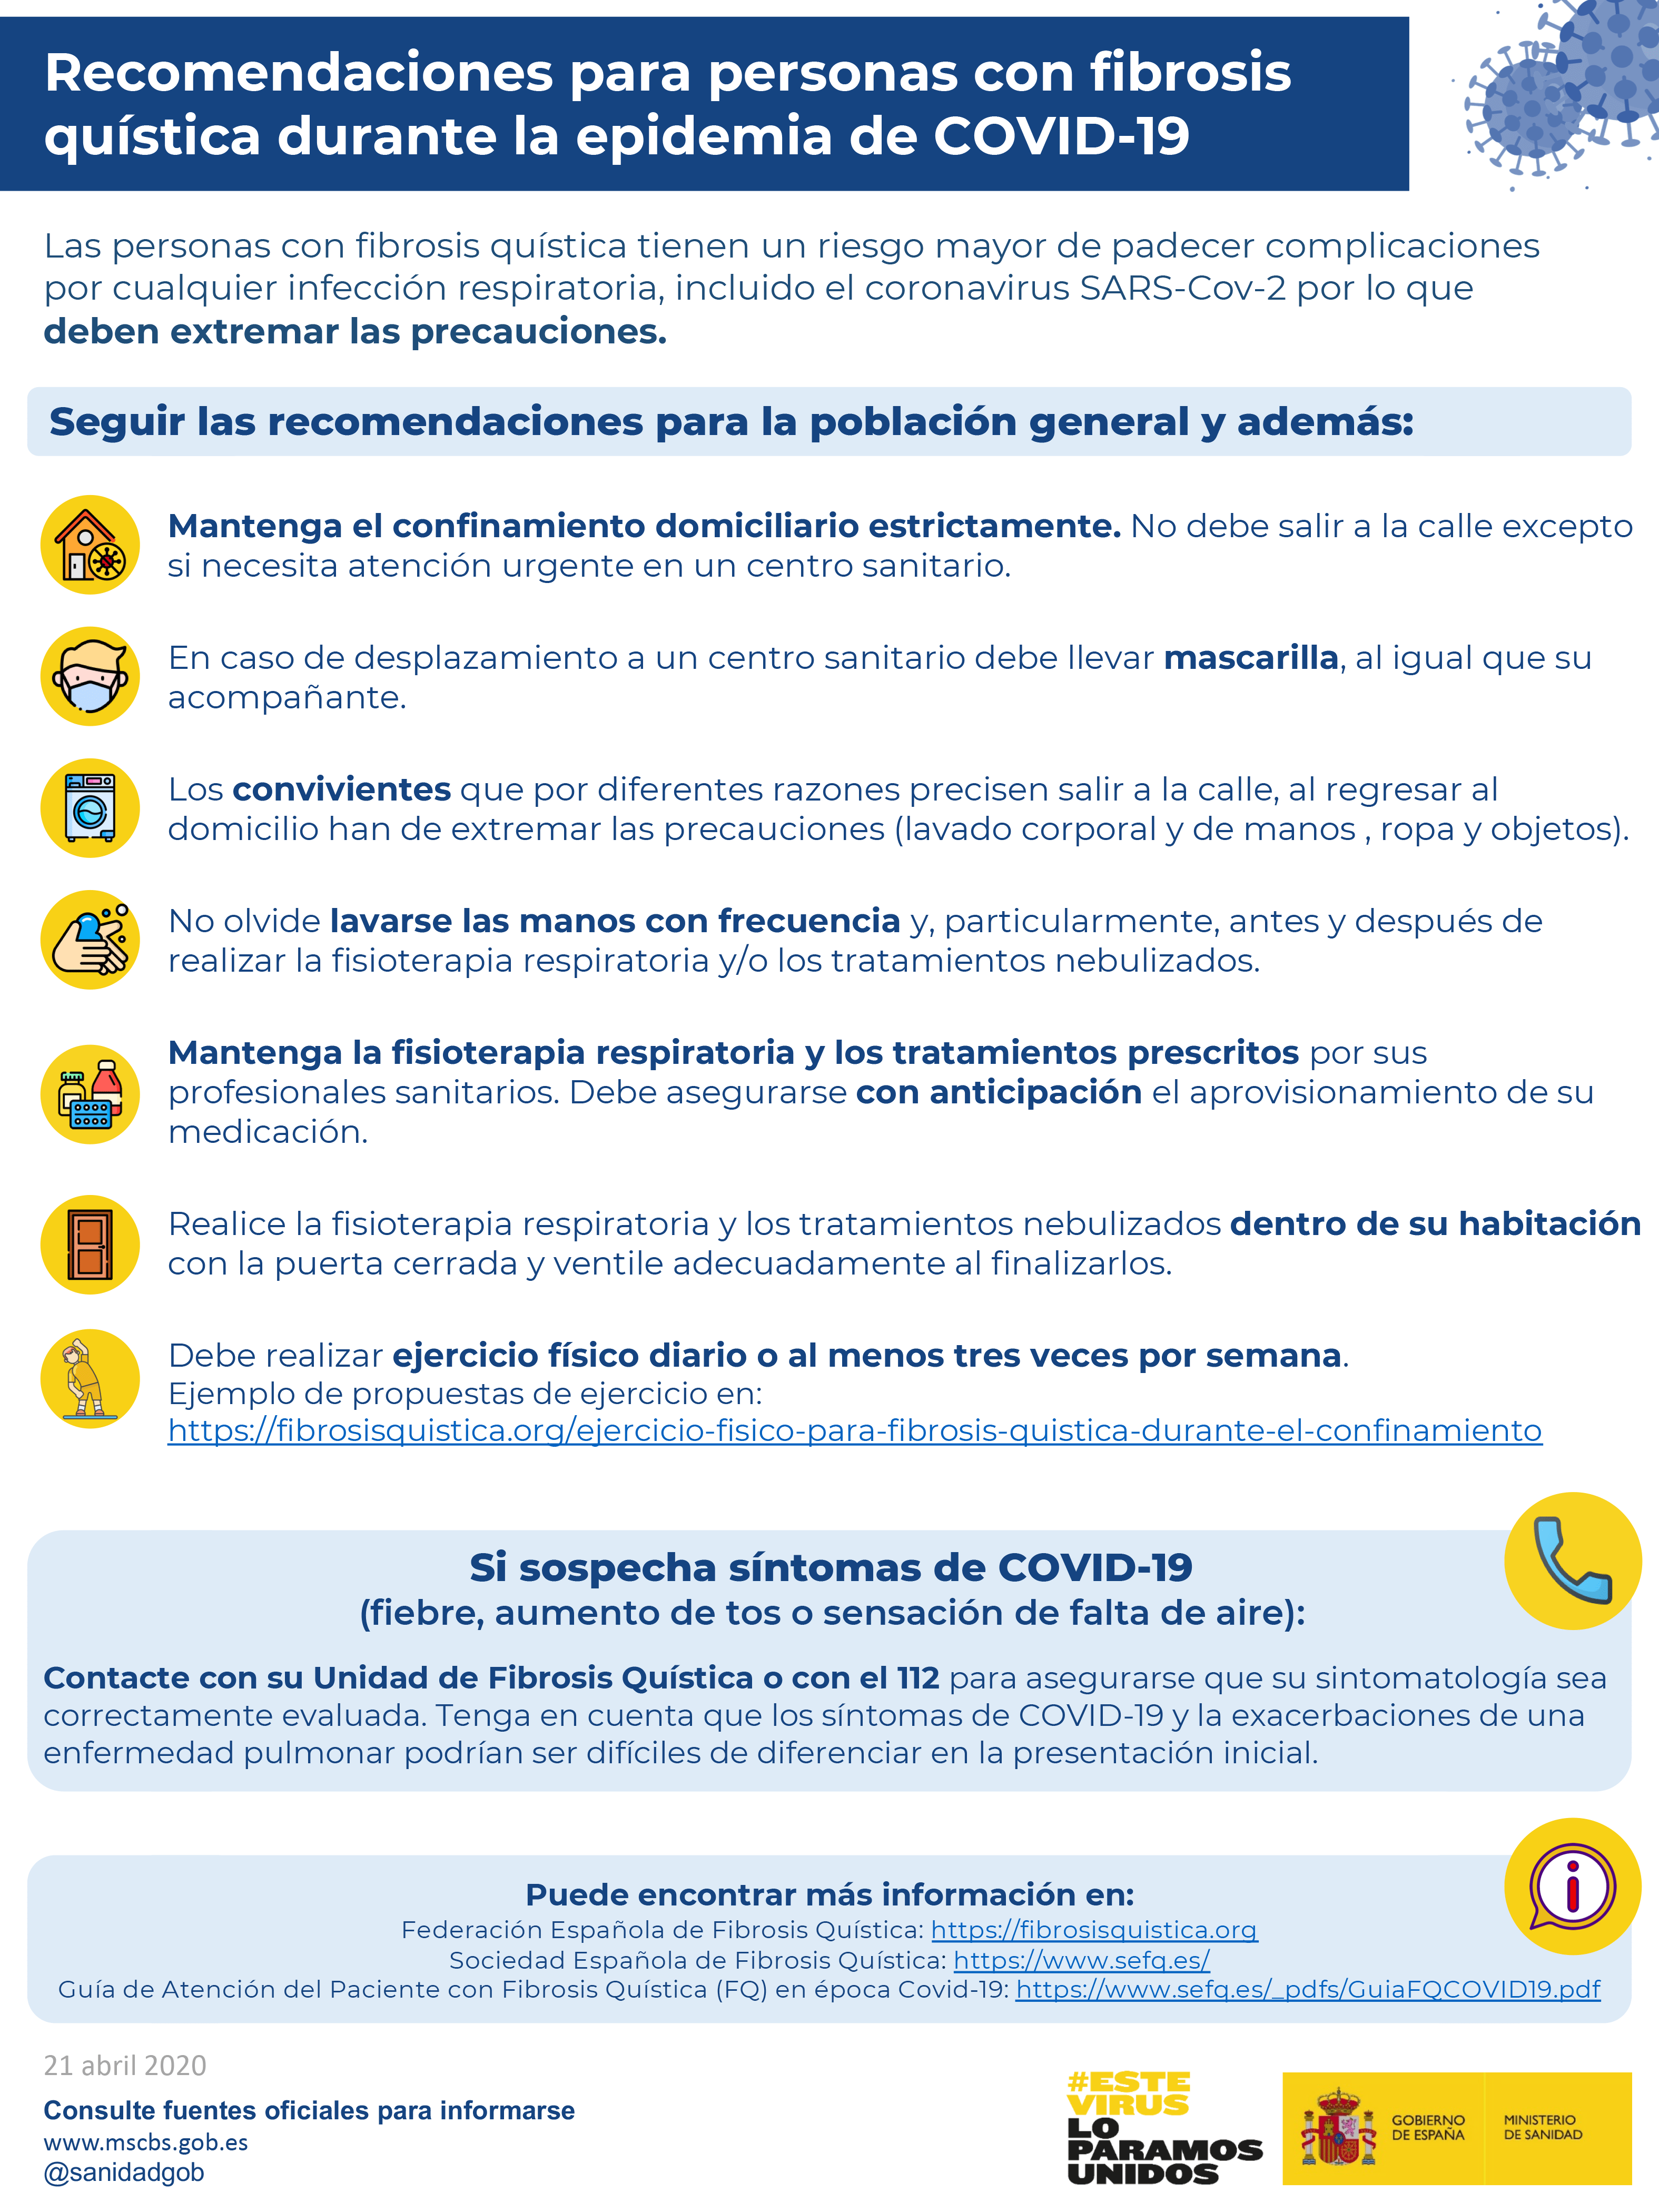 Infografía Del Ministeri De Sanitat Per A La Fibrosi Quística Durant La Pandèmia De COVID-19